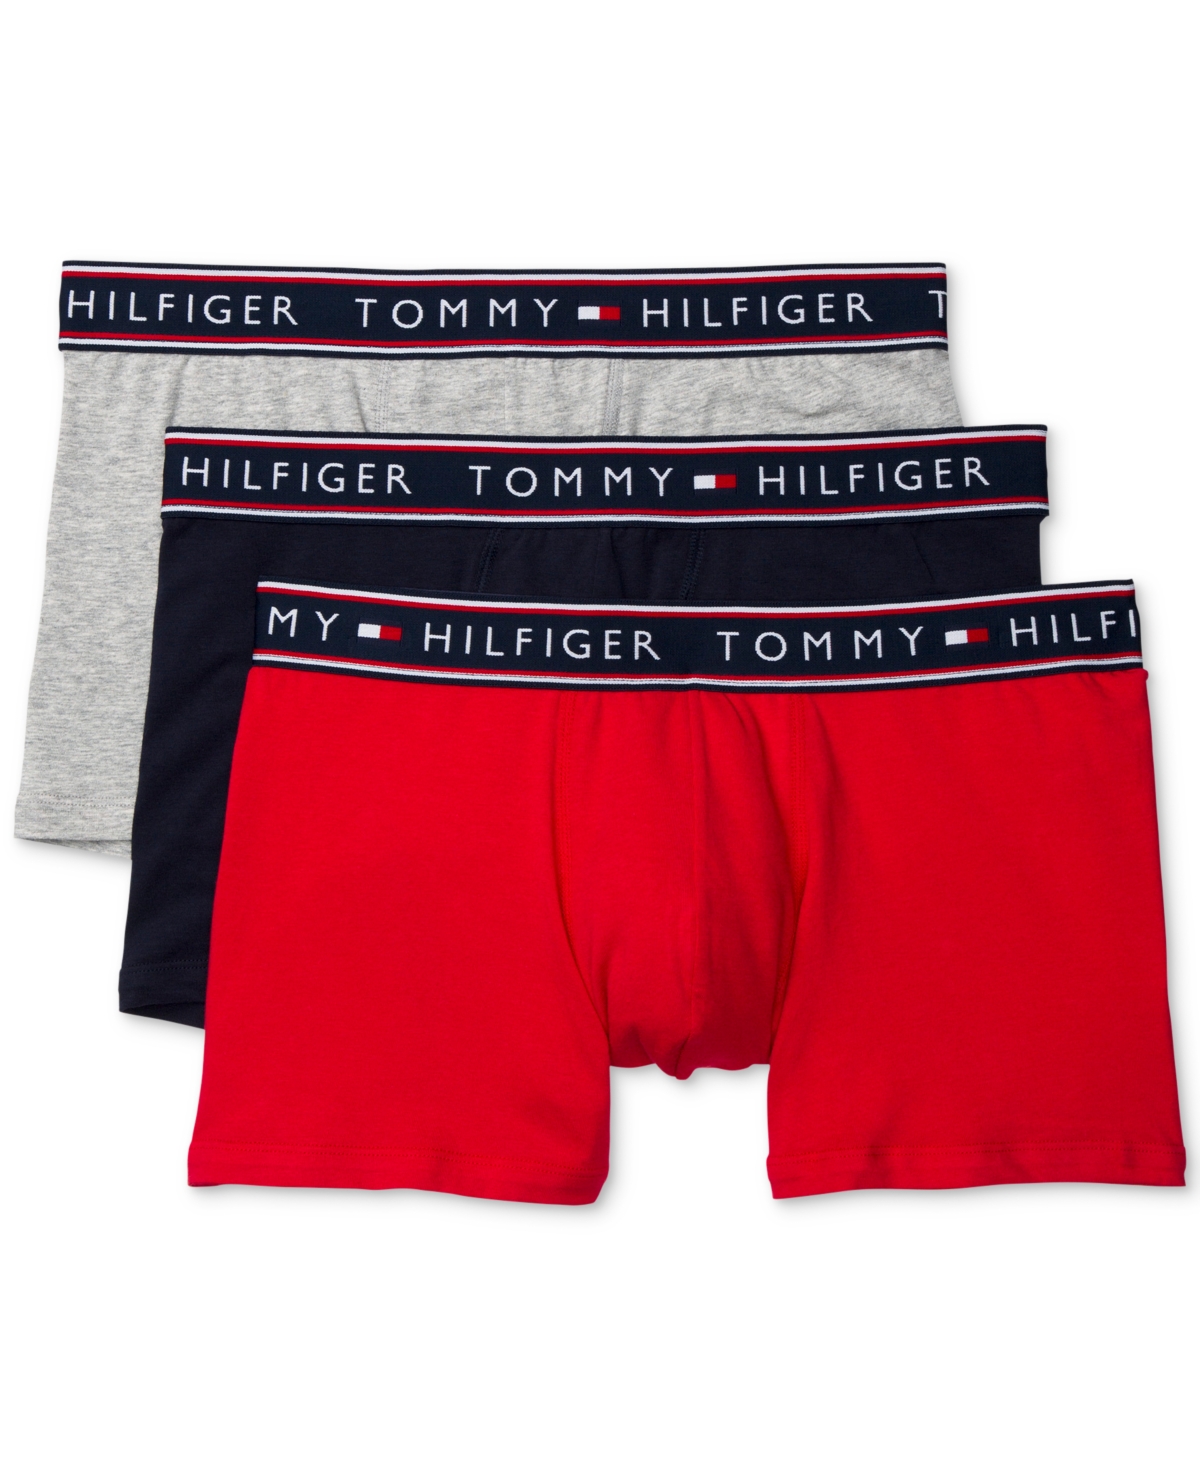 Tommy Hilfiger Men's 3 Pack Cotton Classics Boxer Briefs, Persian